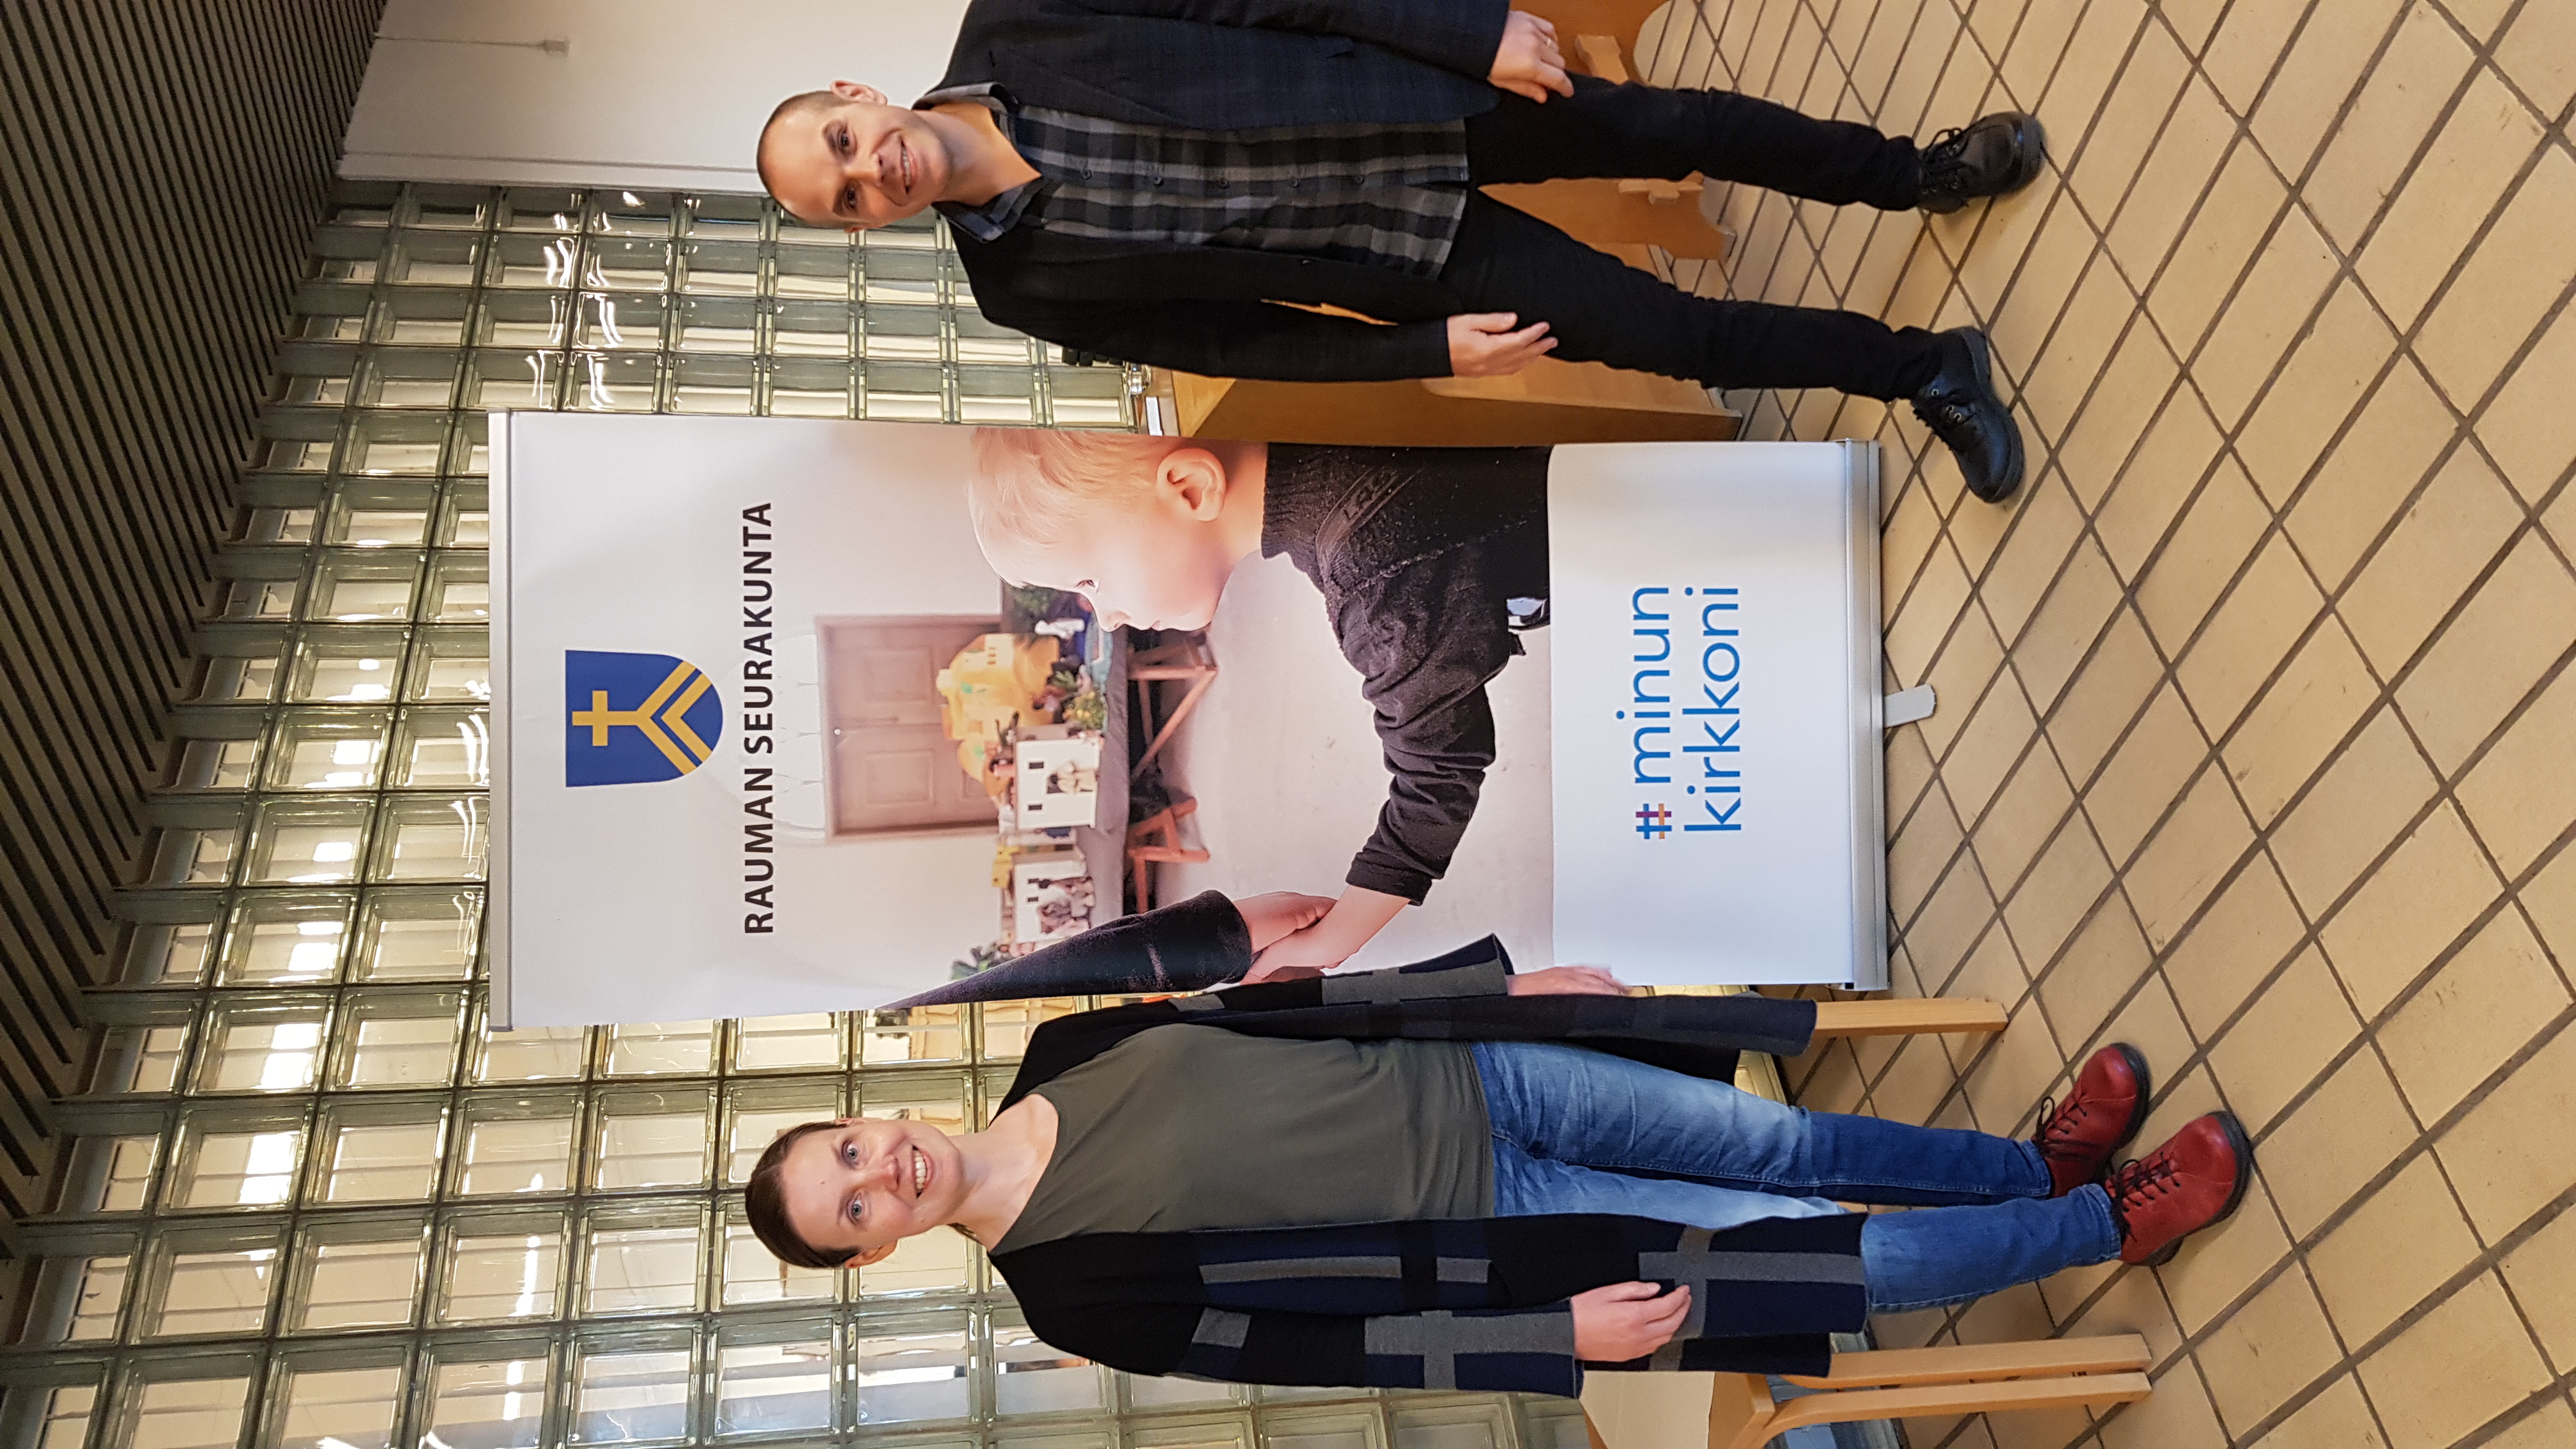 Vasemmalla kuvassa seurakuntapastori Lotta Hatakka ja oikealla kappalainen Valtteri Virta. Henkilöt seisovat ja hymyilevät Rauman seurakunnan virastotalon aulassa.